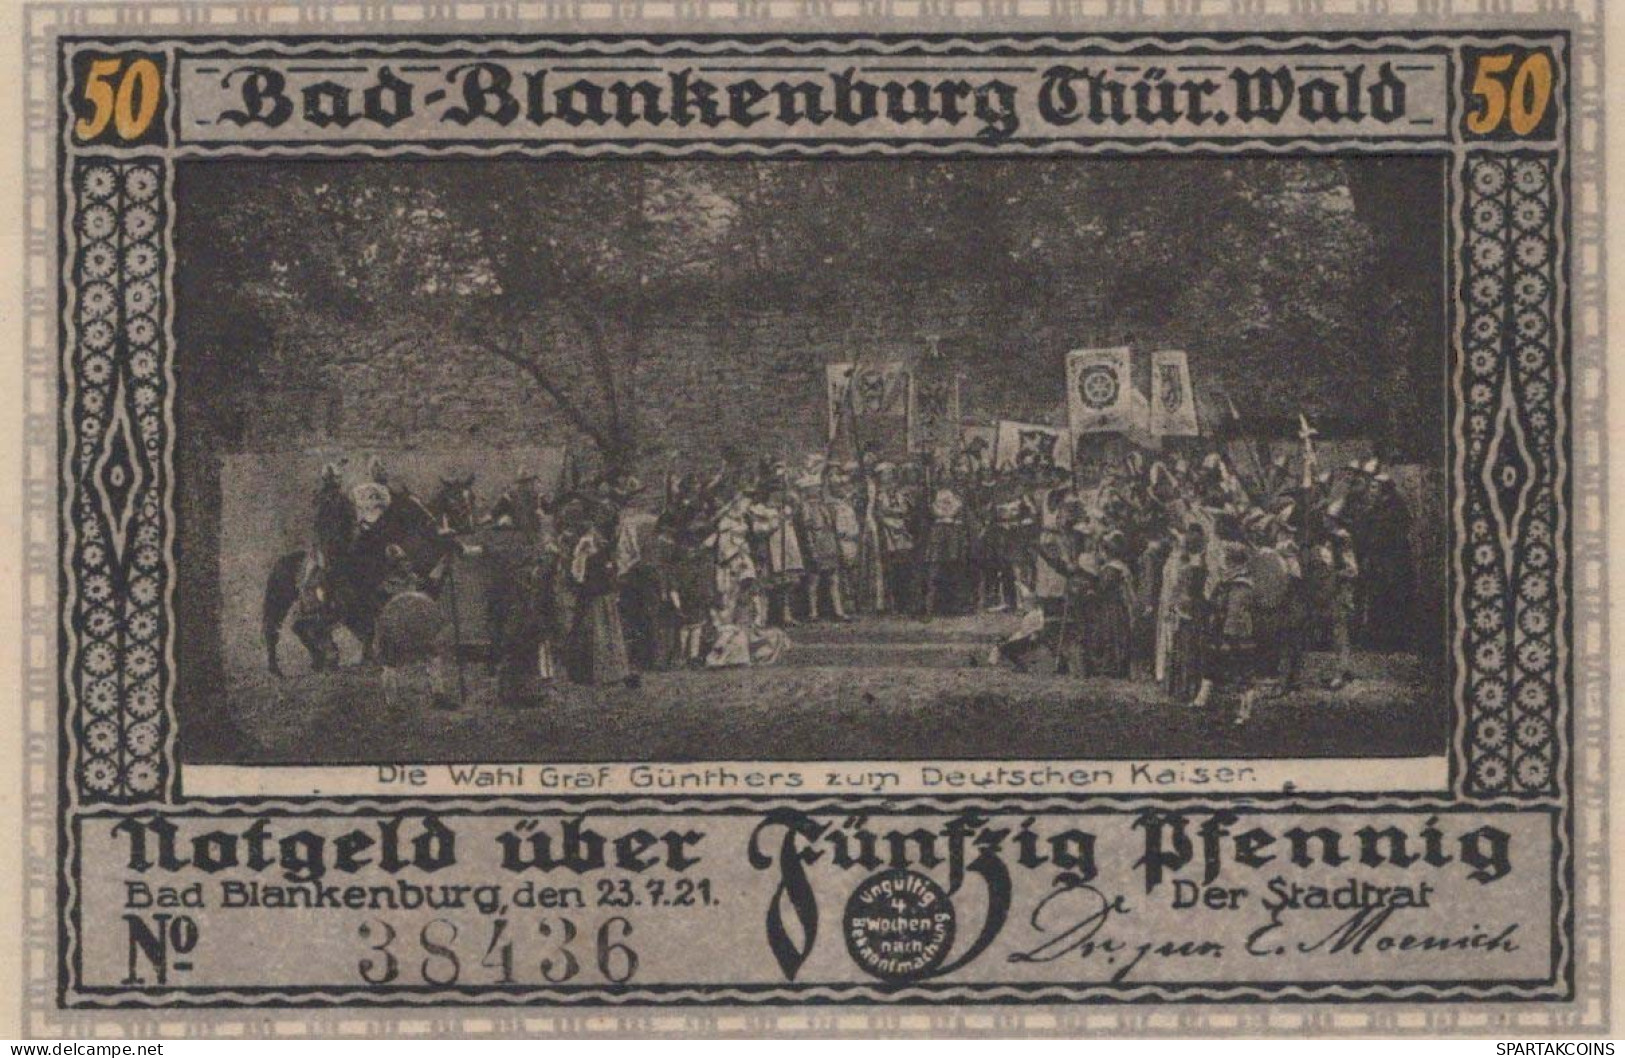 50 PFENNIG 1921 Stadt BAD BLANKENBURG Thuringia UNC DEUTSCHLAND Notgeld #PA235 - [11] Emissions Locales